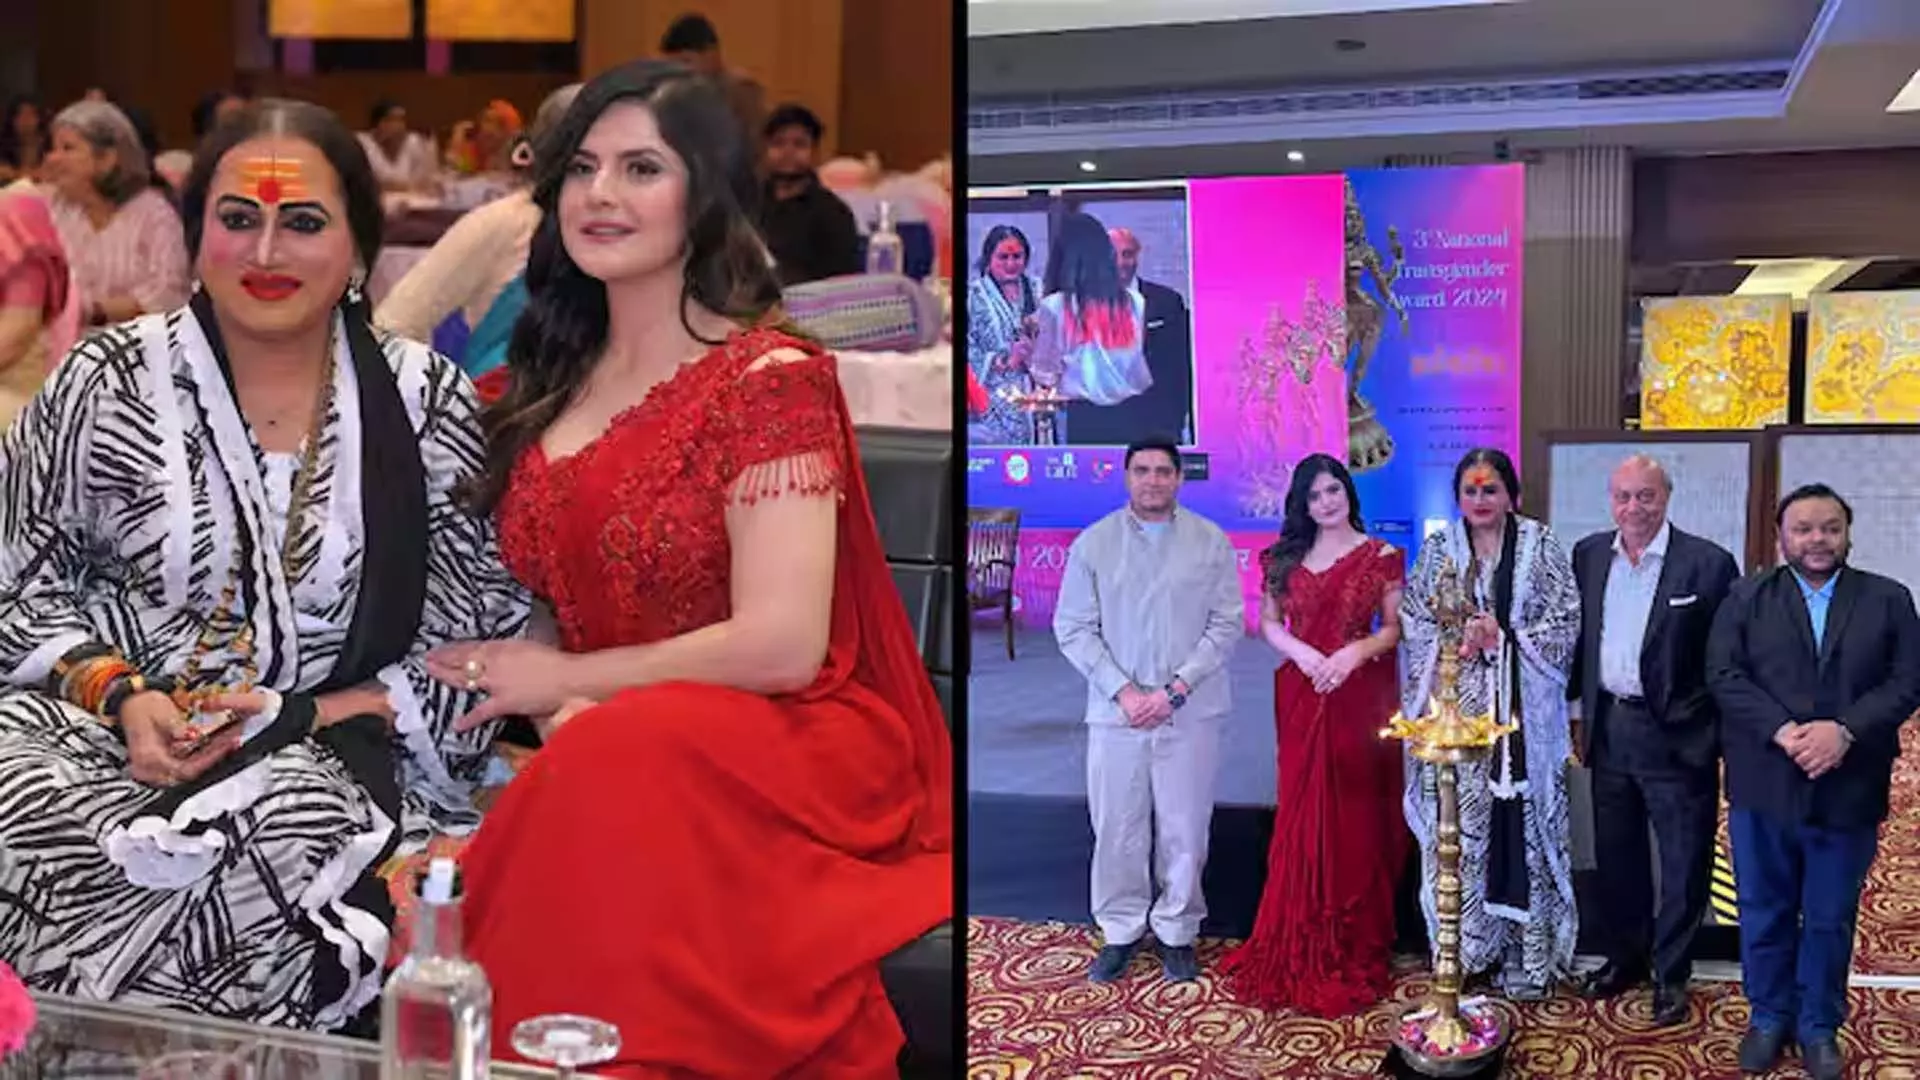 राष्ट्रीय ट्रांसजेंडर पुरस्कार का उद्घाटन करते समय जरीन खान लाल साड़ी में बेहद खूबसूरत लगी